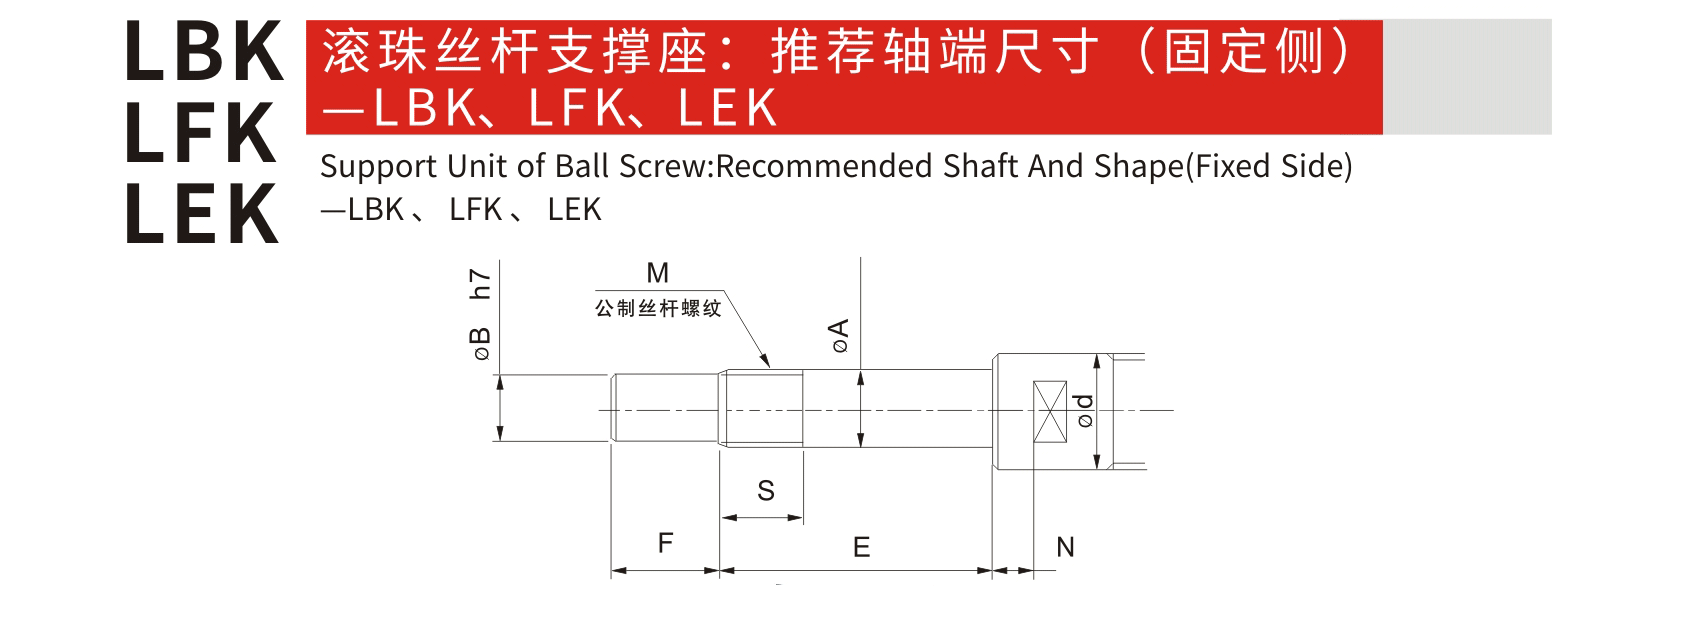 LEK 固定側_聯軸器種類-廣州菱科自動化設備有限公司